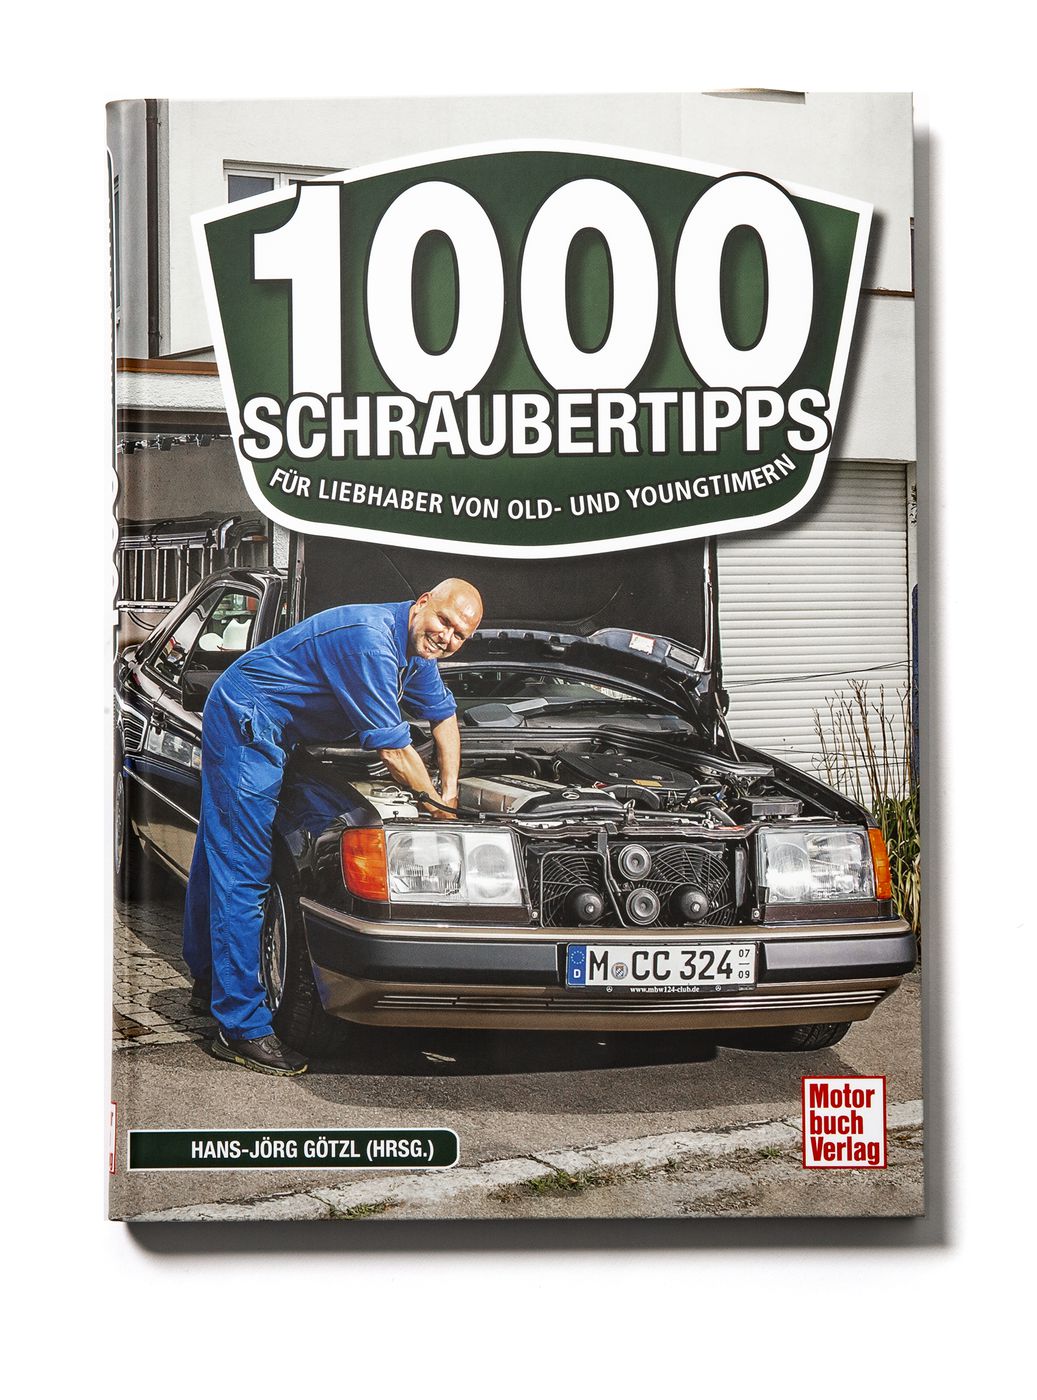 1000 Schraubertipps
1000 Schraubertipps
1000 Schraubertipps